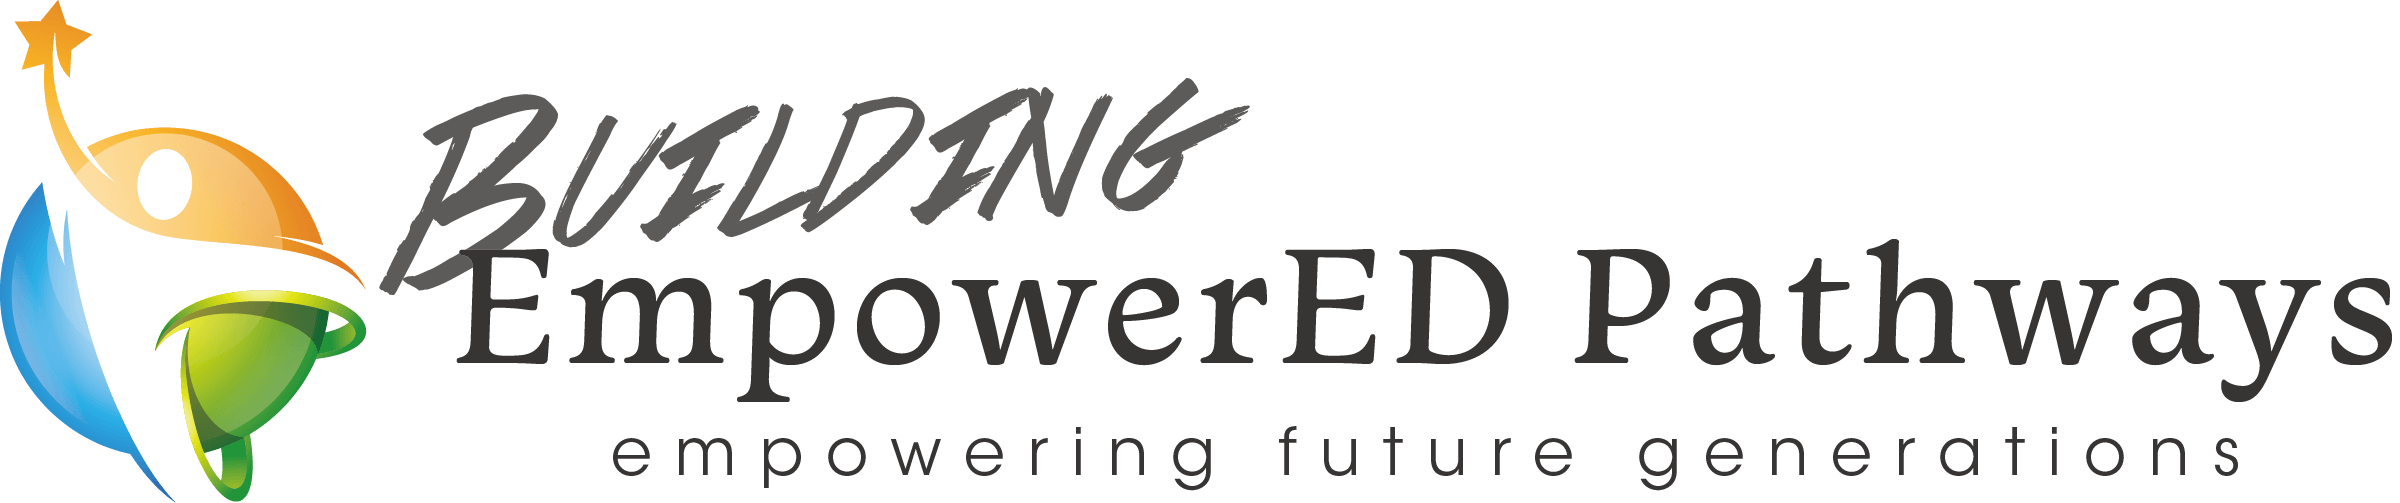 Building Empowered Pathways Logo